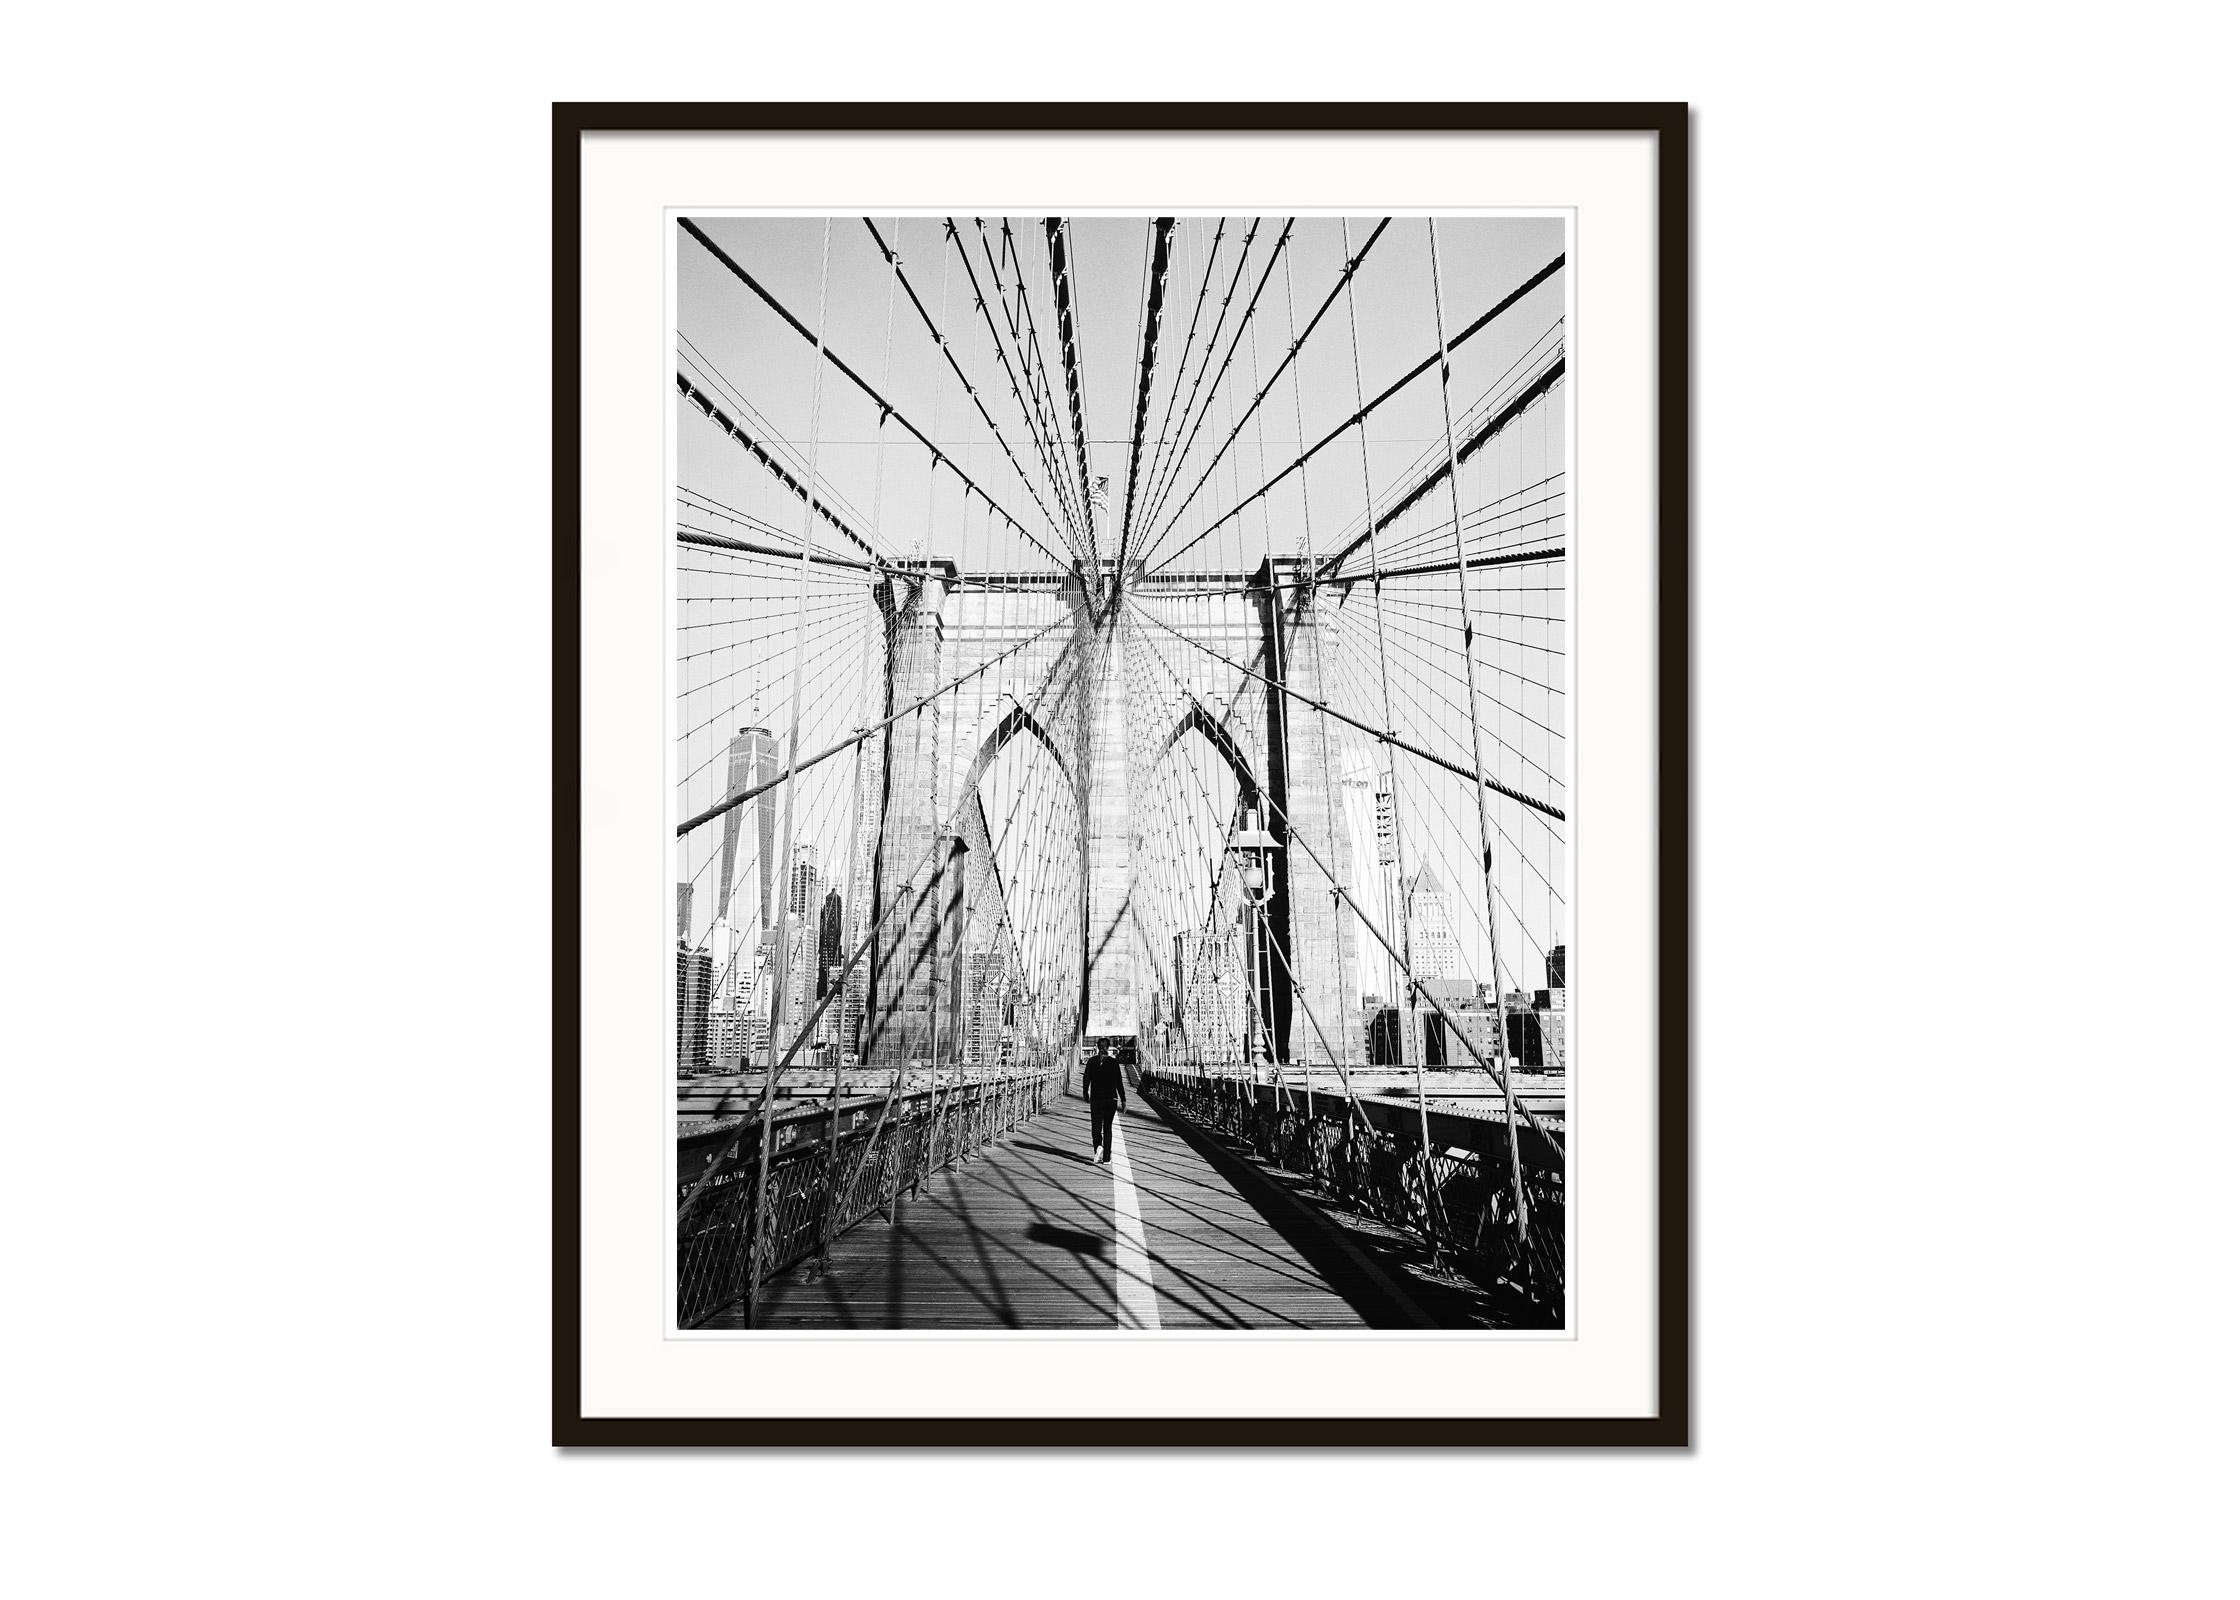 Schwarz-Weiß-Fotografie für Stadtansichten. Spaziergänger auf der Brooklyn-Brücke im Morgenlicht, New York City, USA. Pigmenttintendruck, Auflage 7, signiert, betitelt, datiert und nummeriert vom Künstler. Mit Echtheitszertifikat. Bedruckt mit einem